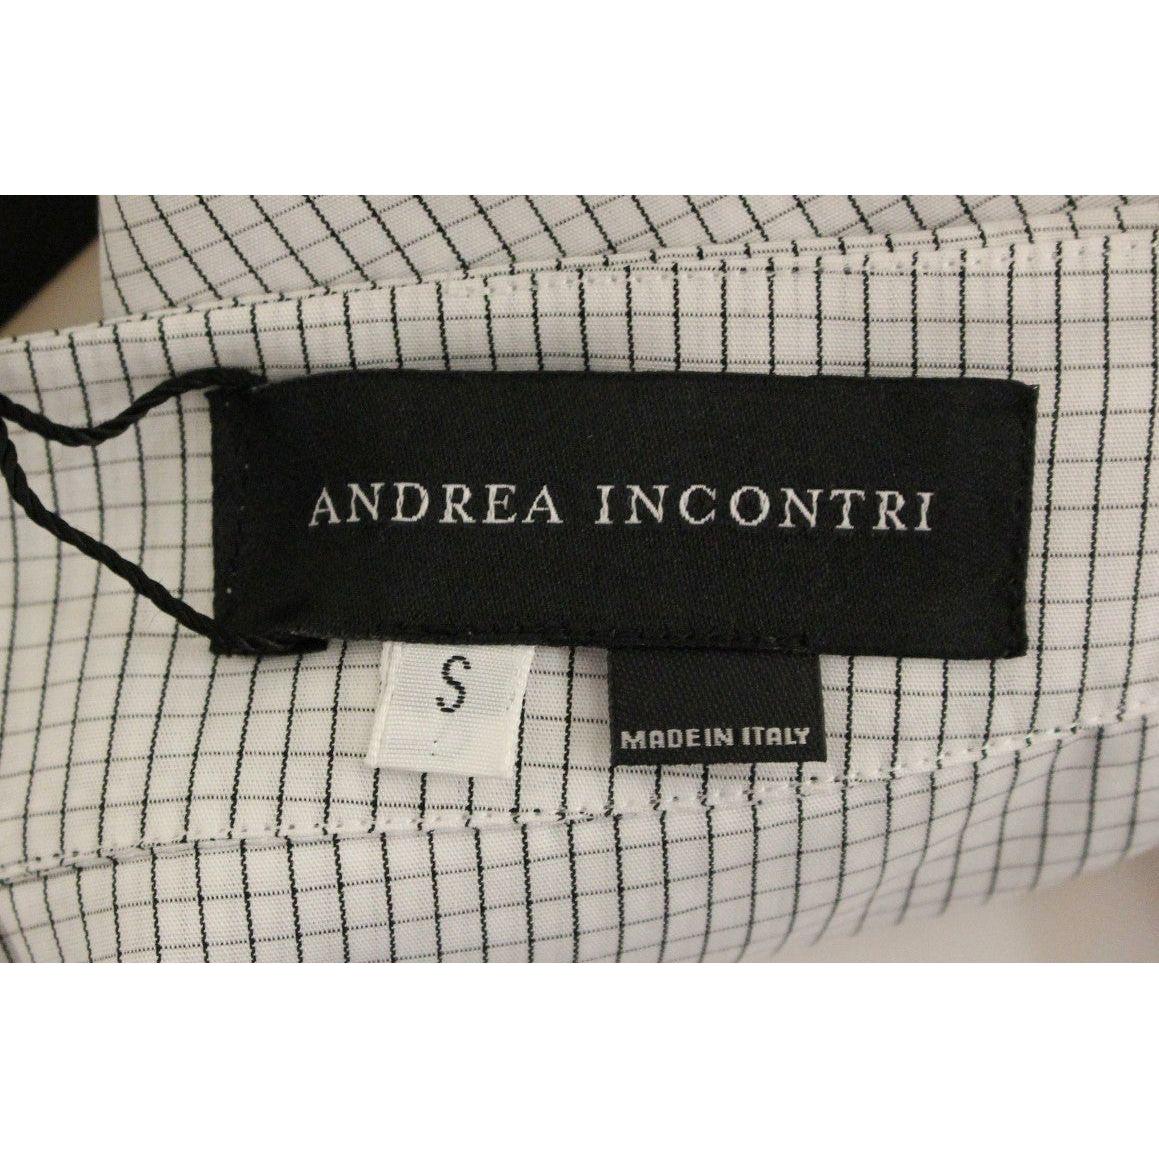 Andrea Incontri Chic White Checkered Cotton Shorts white-checkered-stretch-cotton-shorts 148784-white-checkered-stretch-cotton-shorts-4.jpg